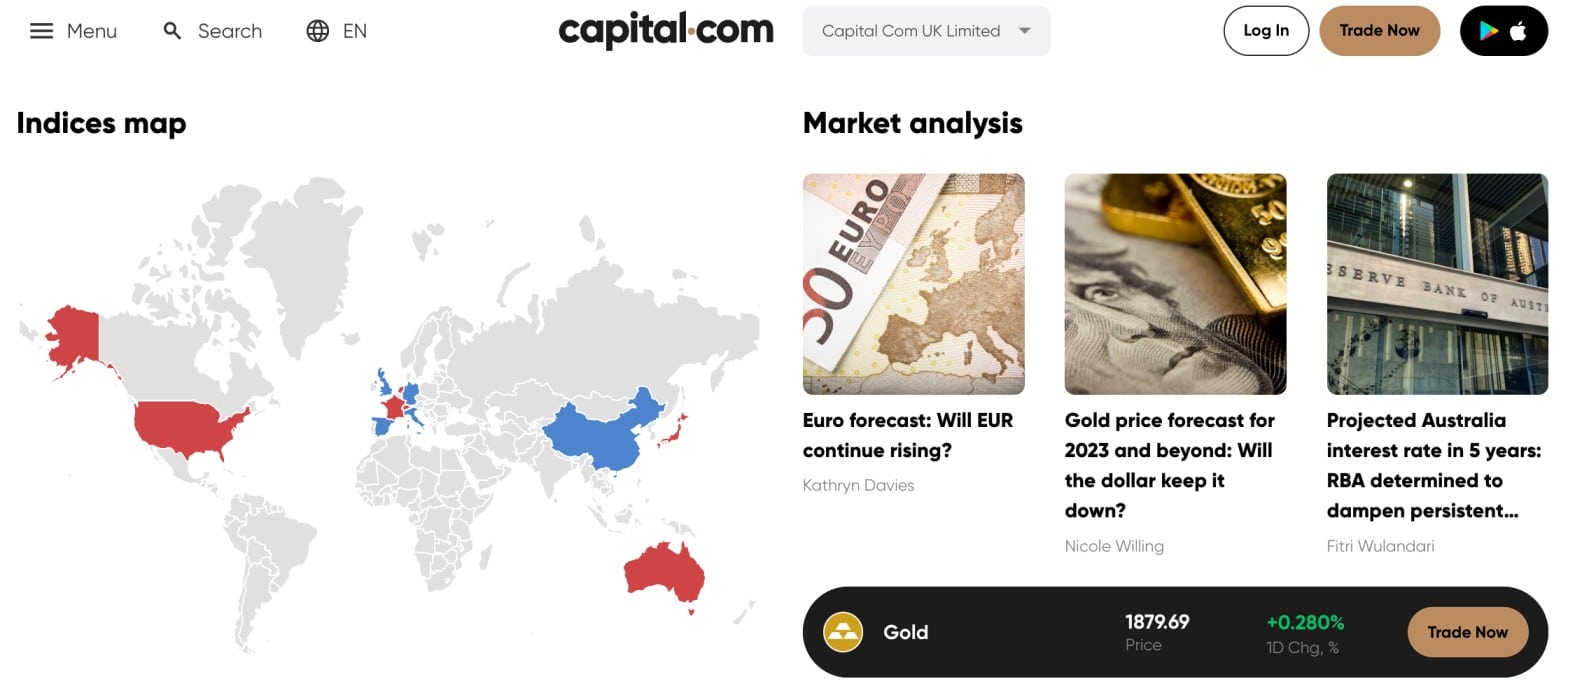 Capital.com review 